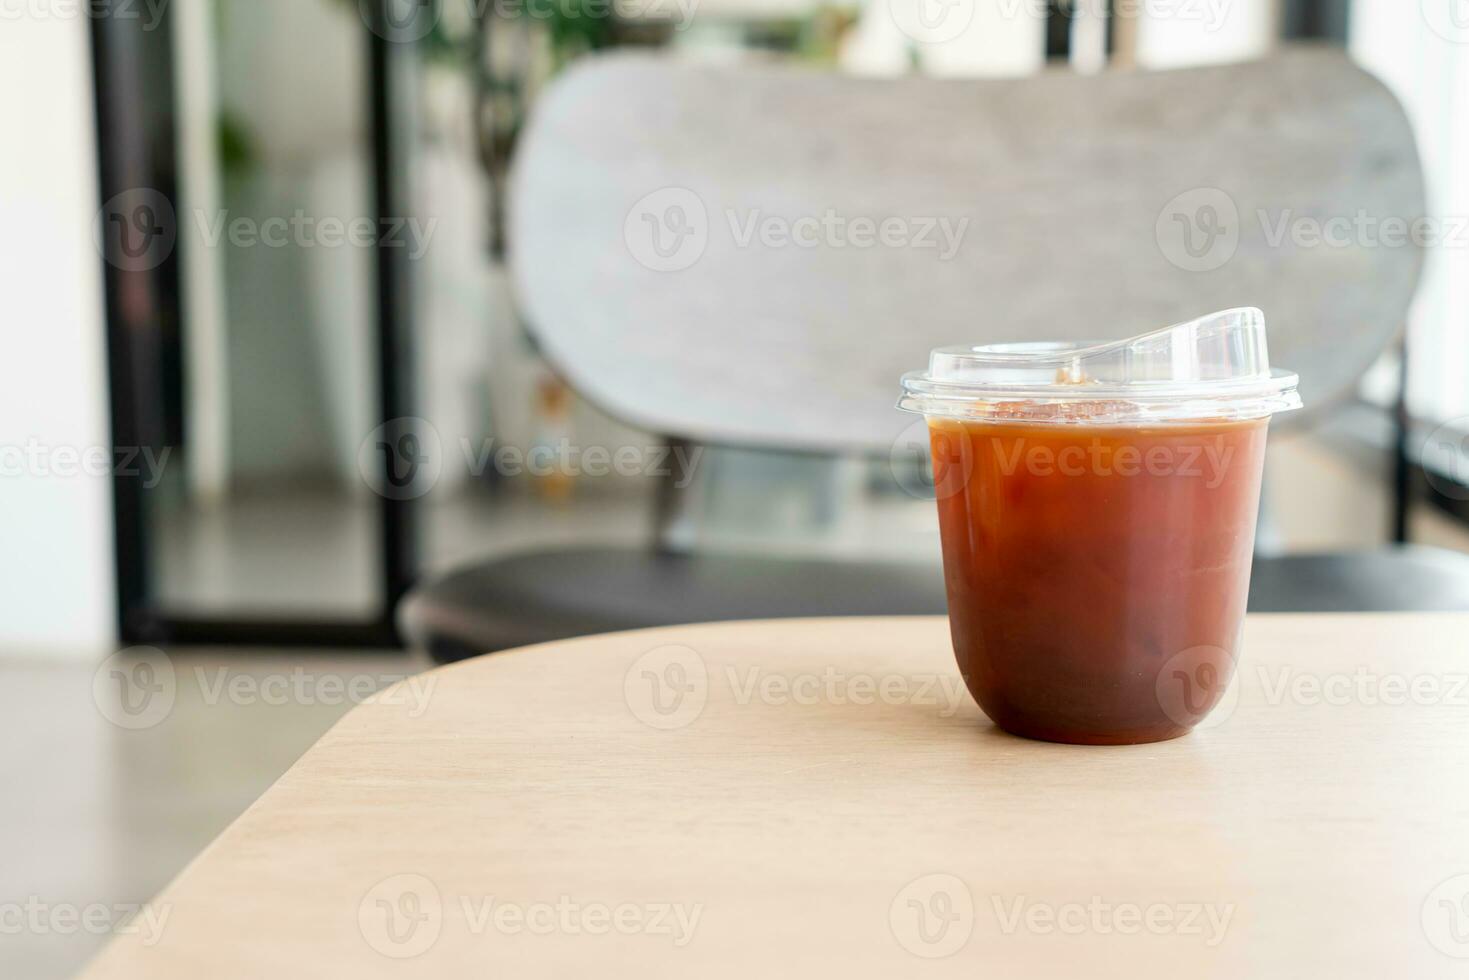 café americano o café negro largo en vaso foto